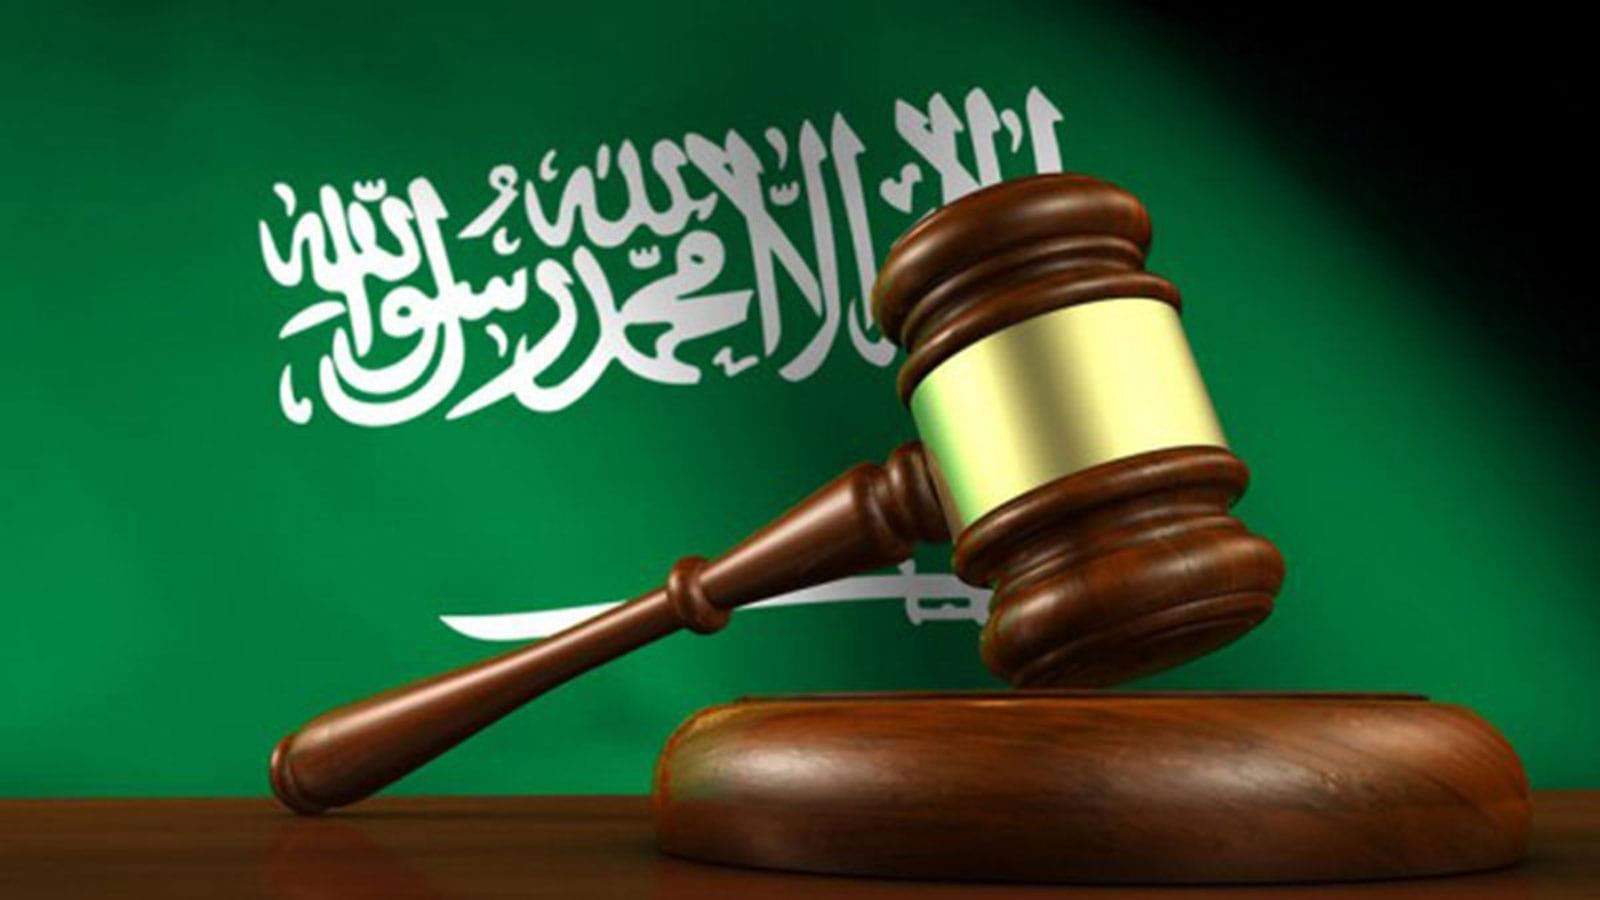 للمرة الأولى في السعودية .. نشر إسم رجل بعد إدانته بالتحرش بسيدة